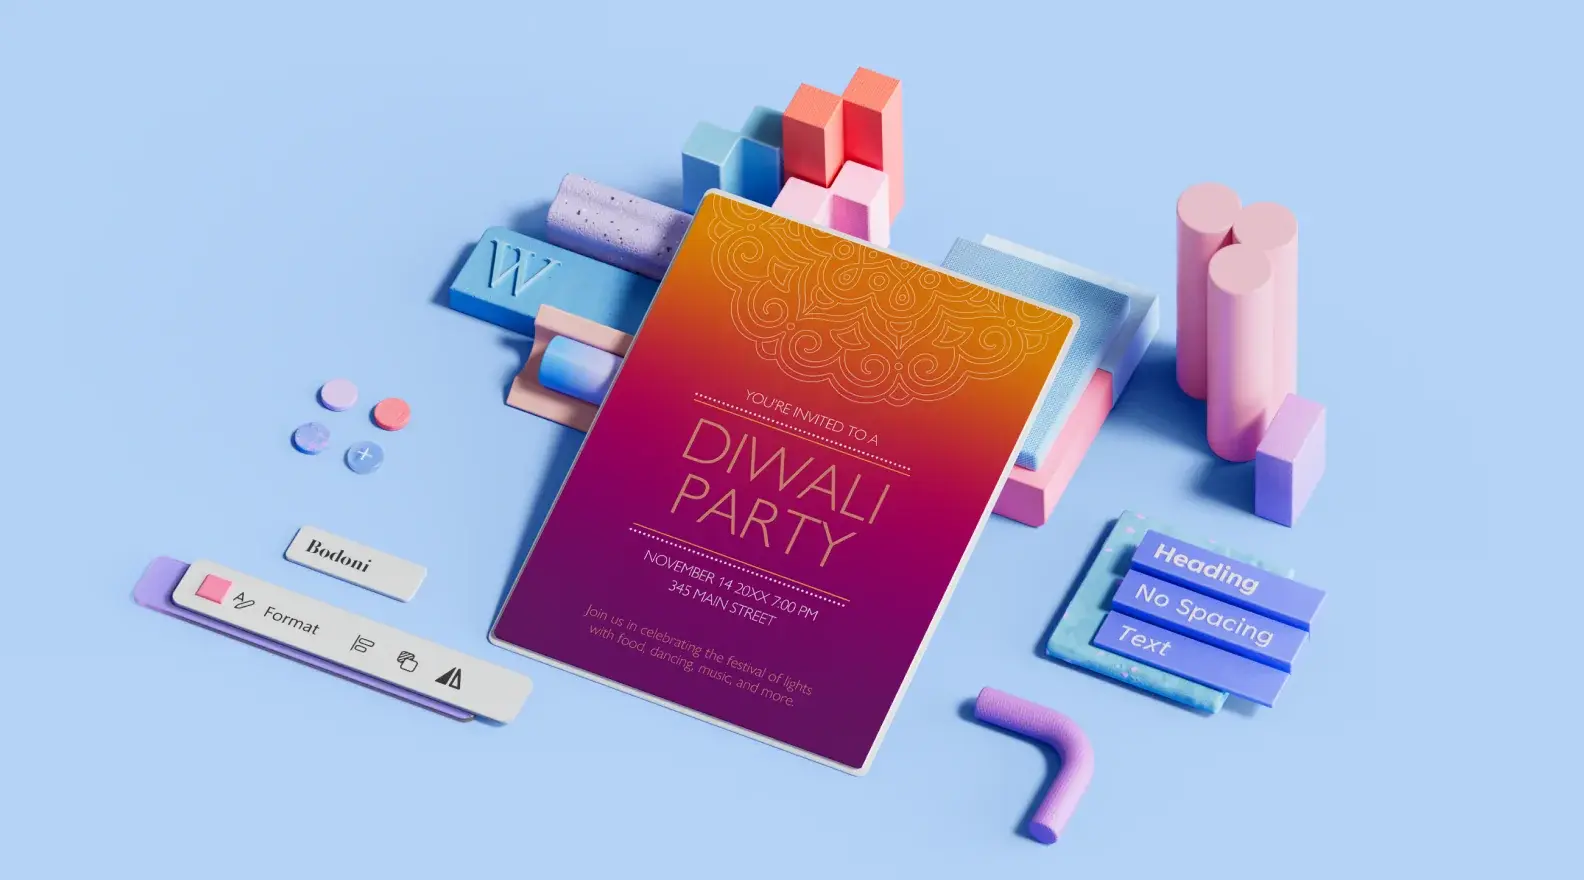 3B tasarım öğeleriyle çevrili Diwali parti etkinliği el ilanı şablonu